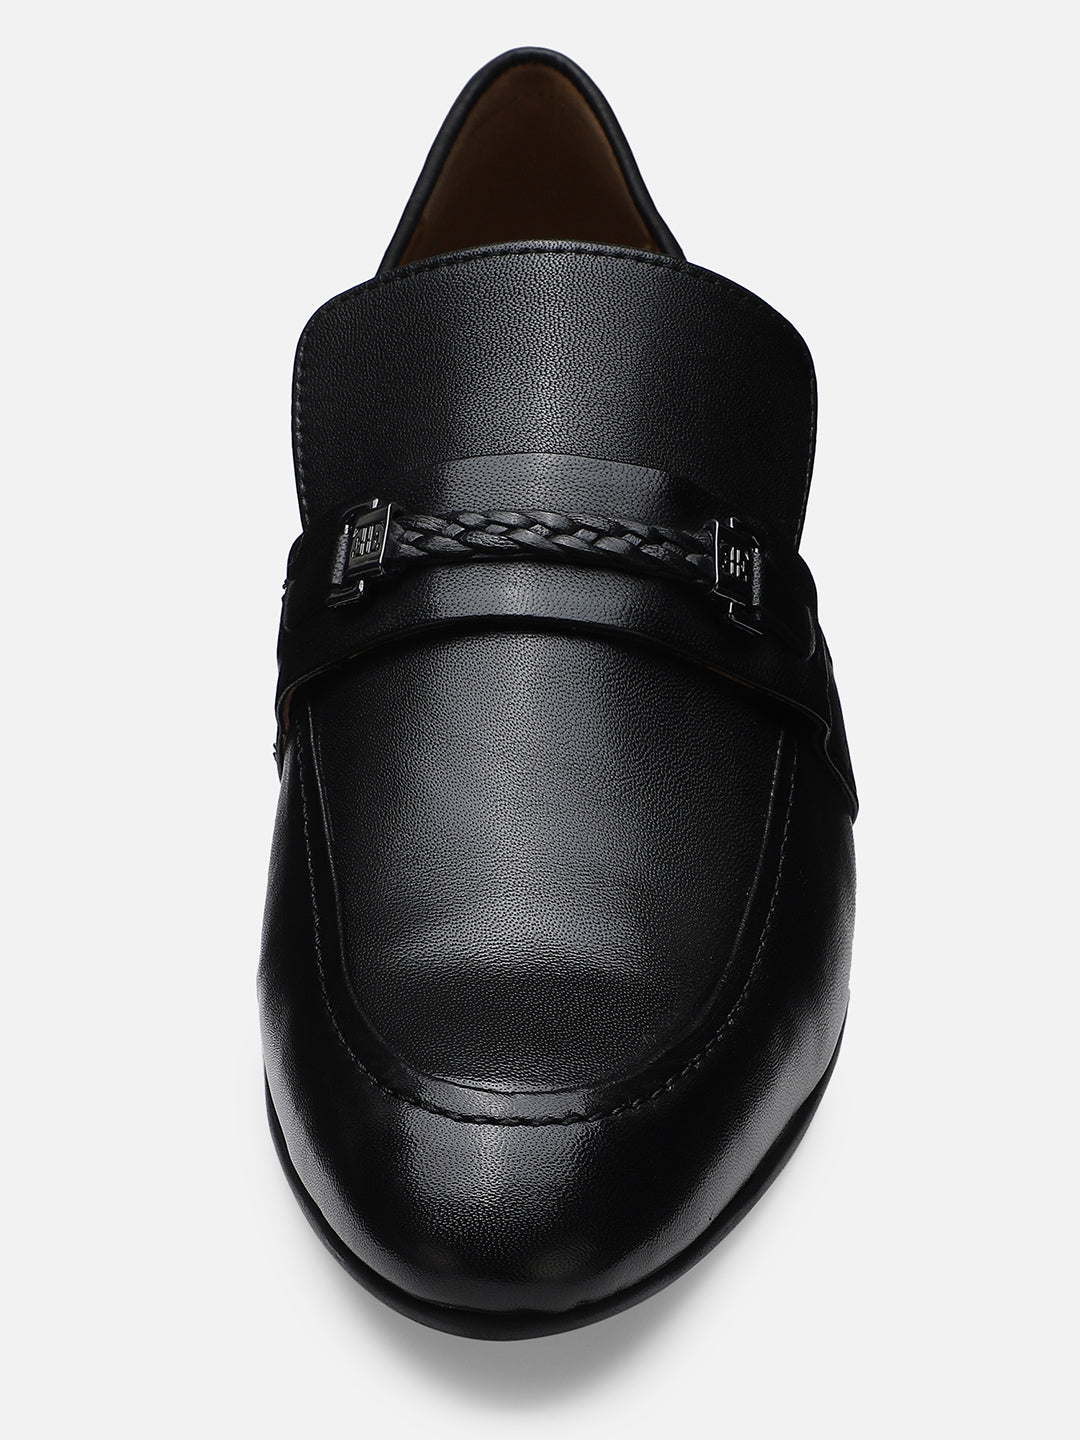 Ezok Men Lazaro Black Leather Loafers Shoes 2024